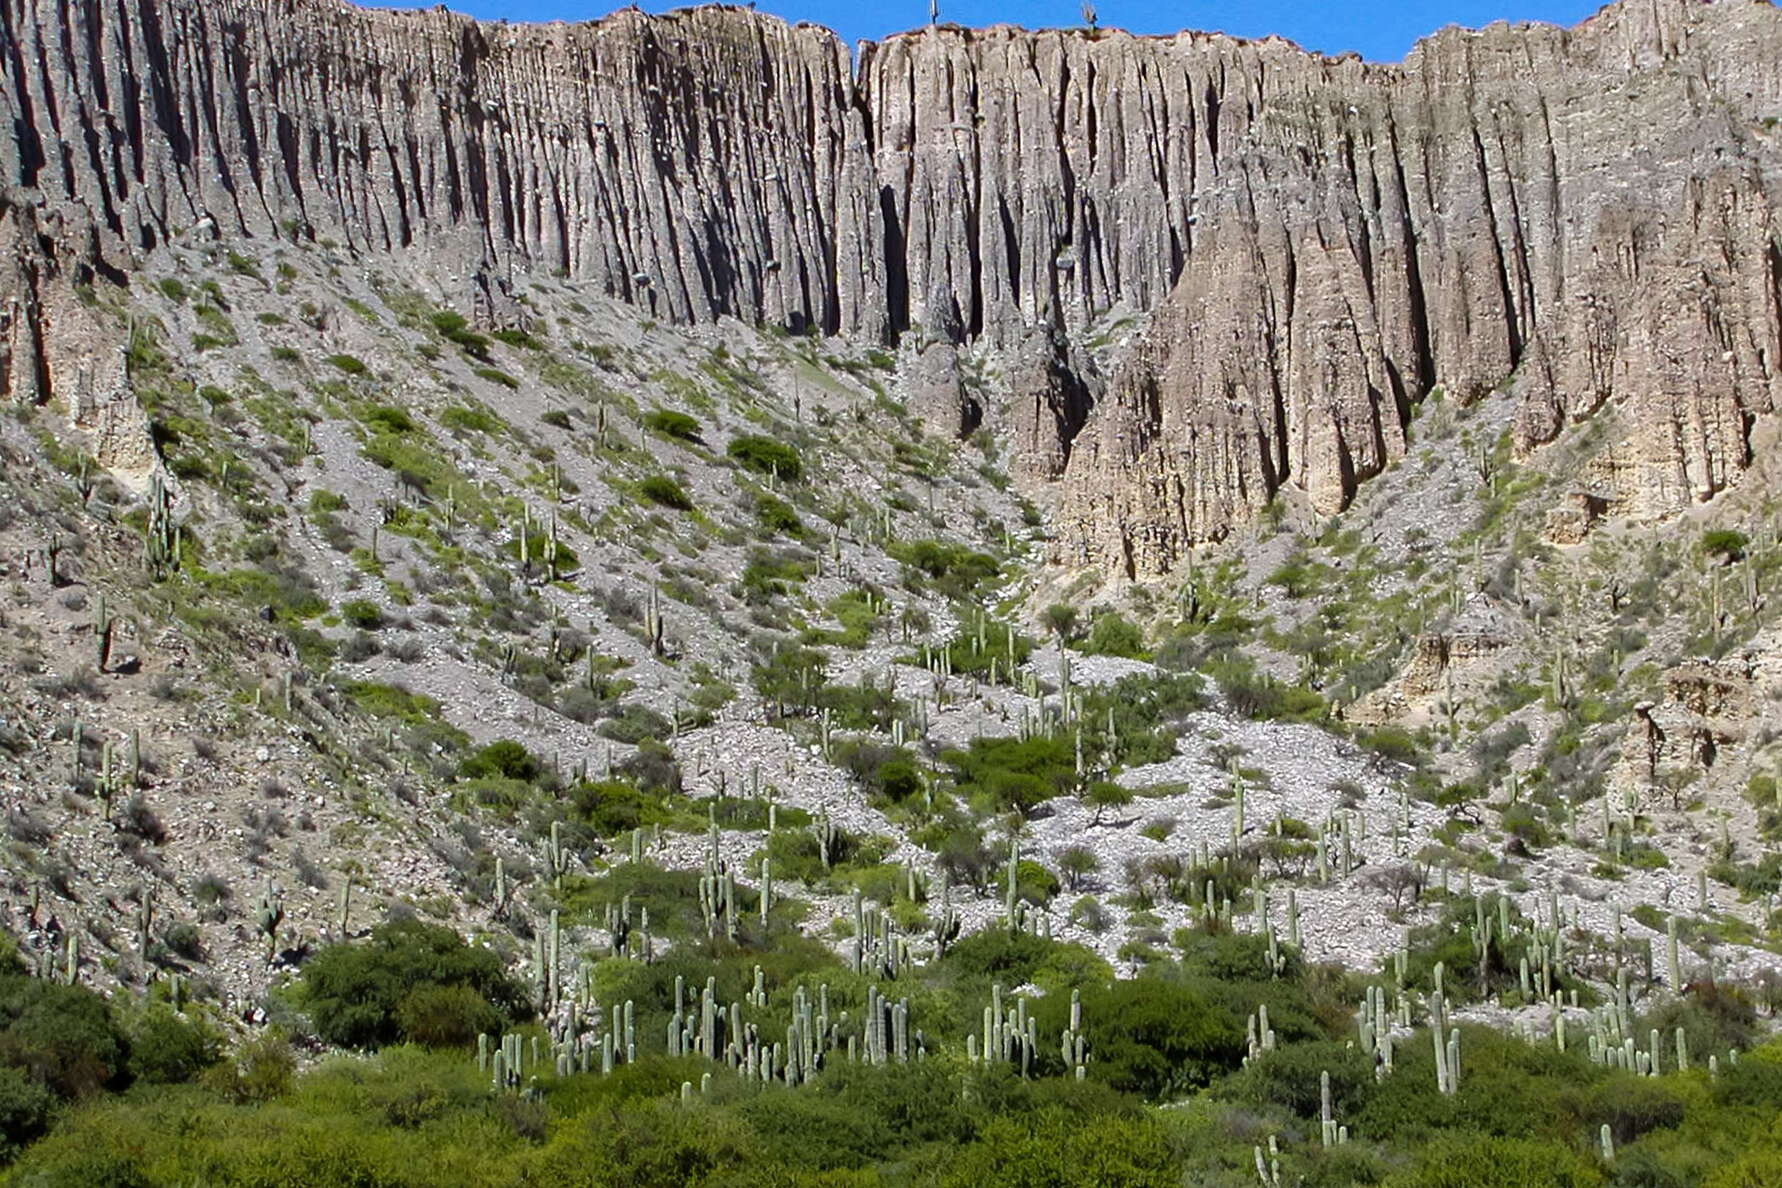 Quebrada de Humahuaca | Linear erosion